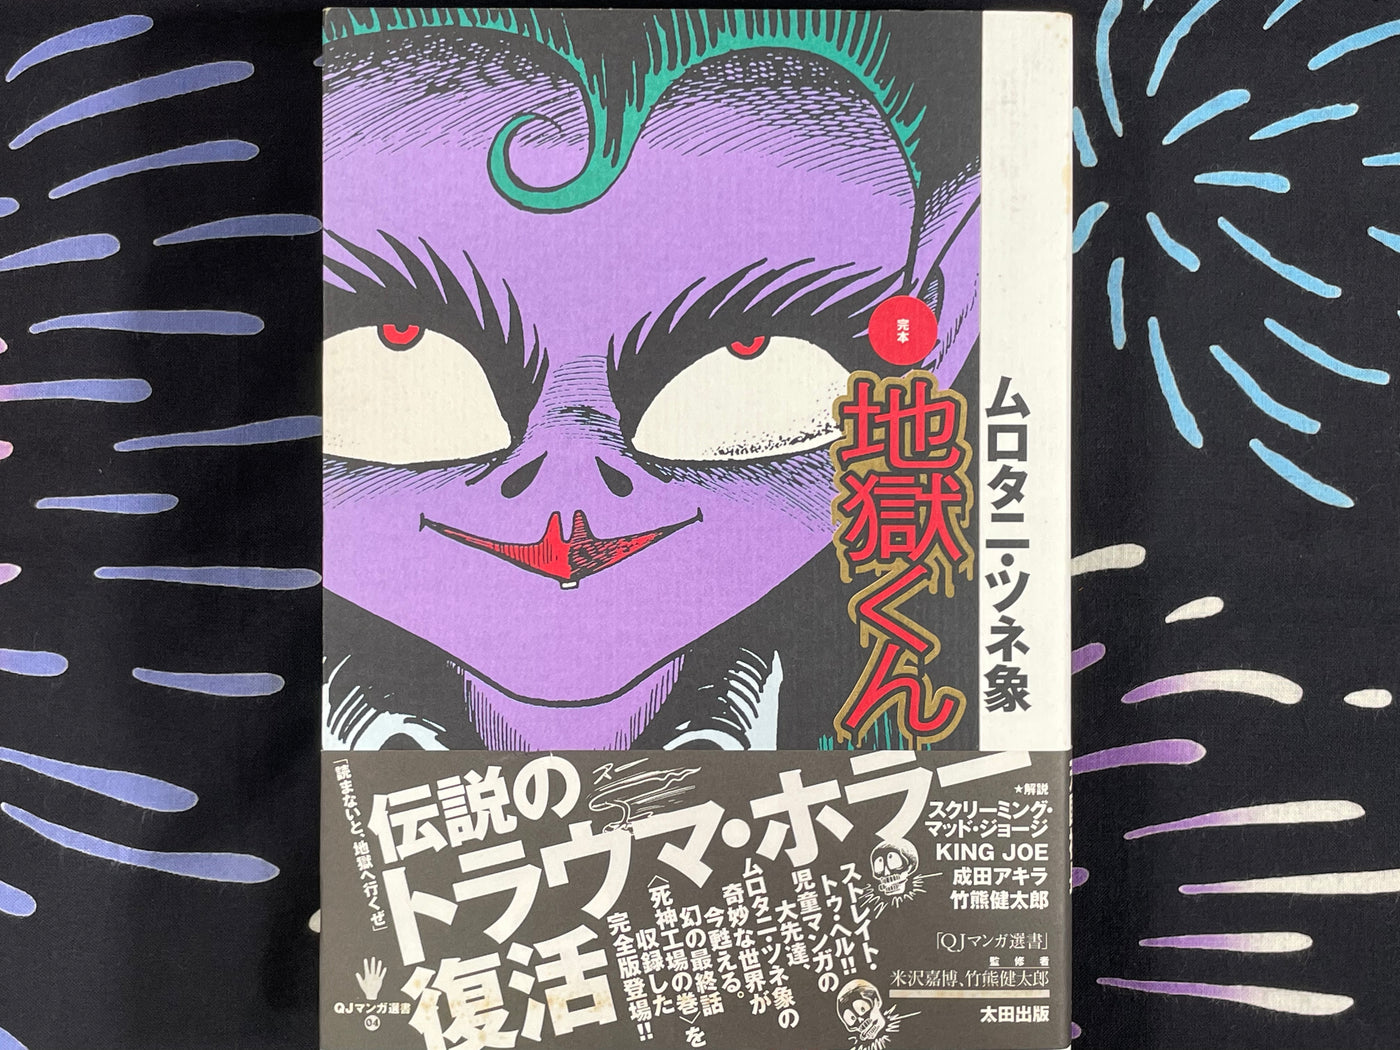 Hell-Kun / Jigoku Kun by Tsunezou Murotani (1997)